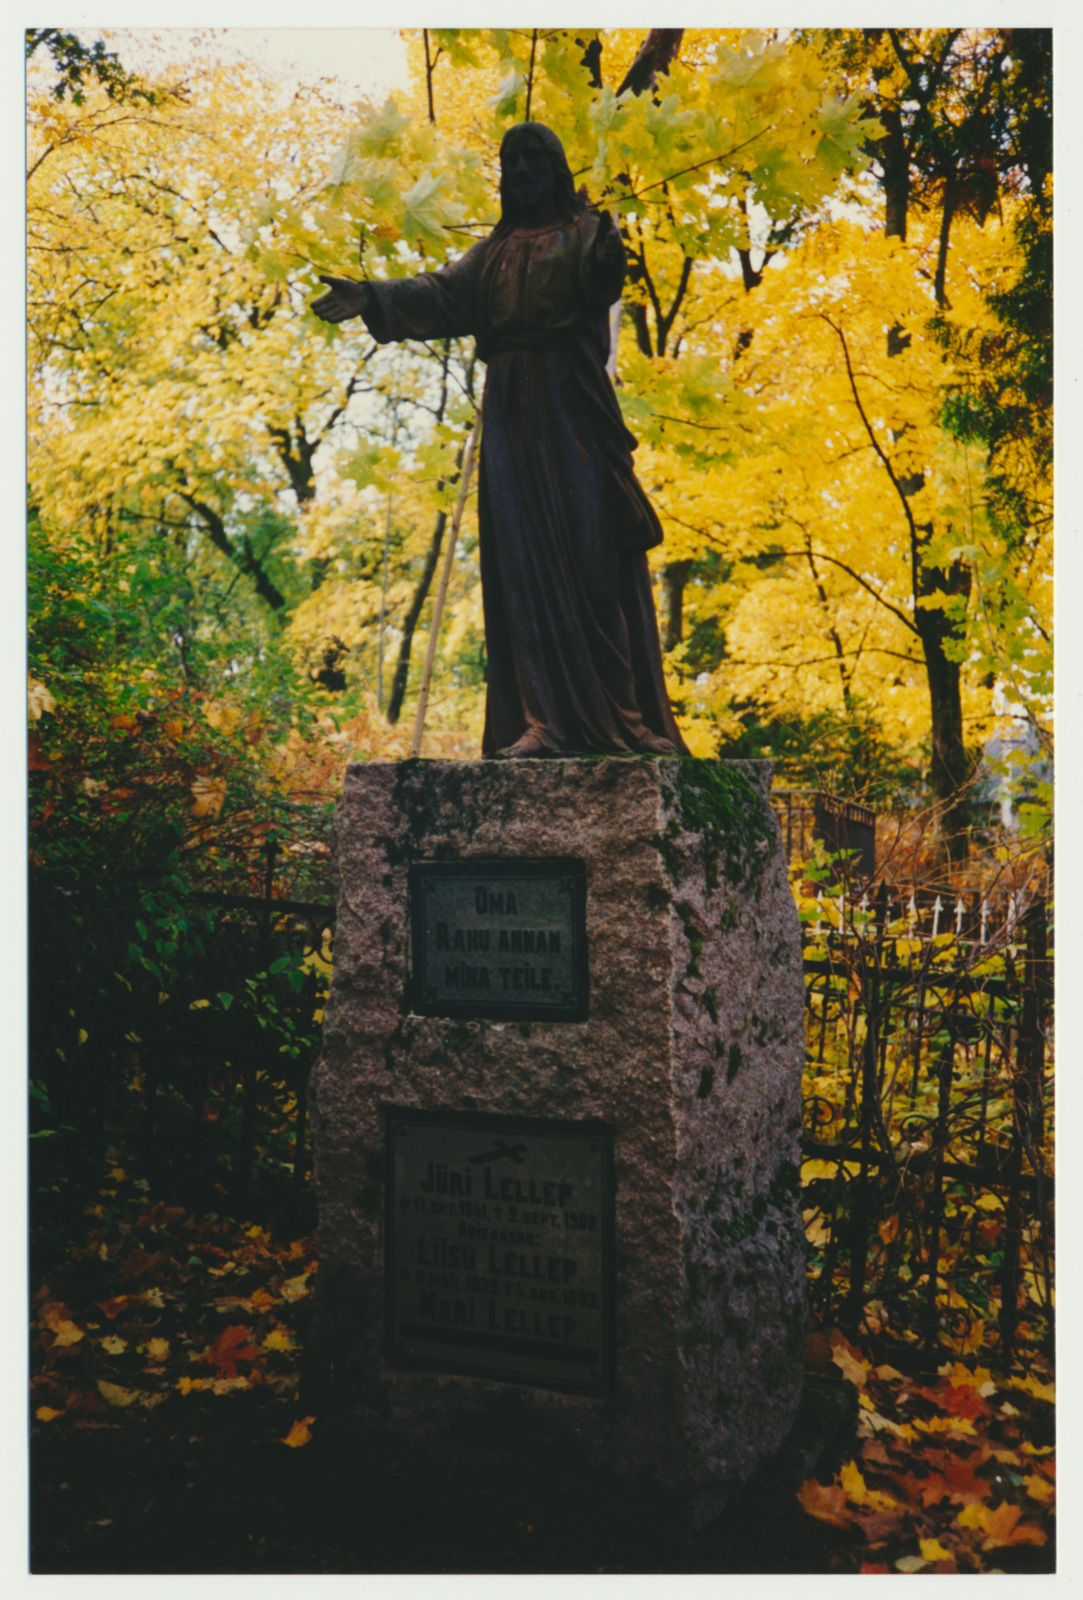 foto, Viljandi, Vana kalmistu, mälestussammas, perekond Lellep, 1993, foto J. Pihlak, värviline